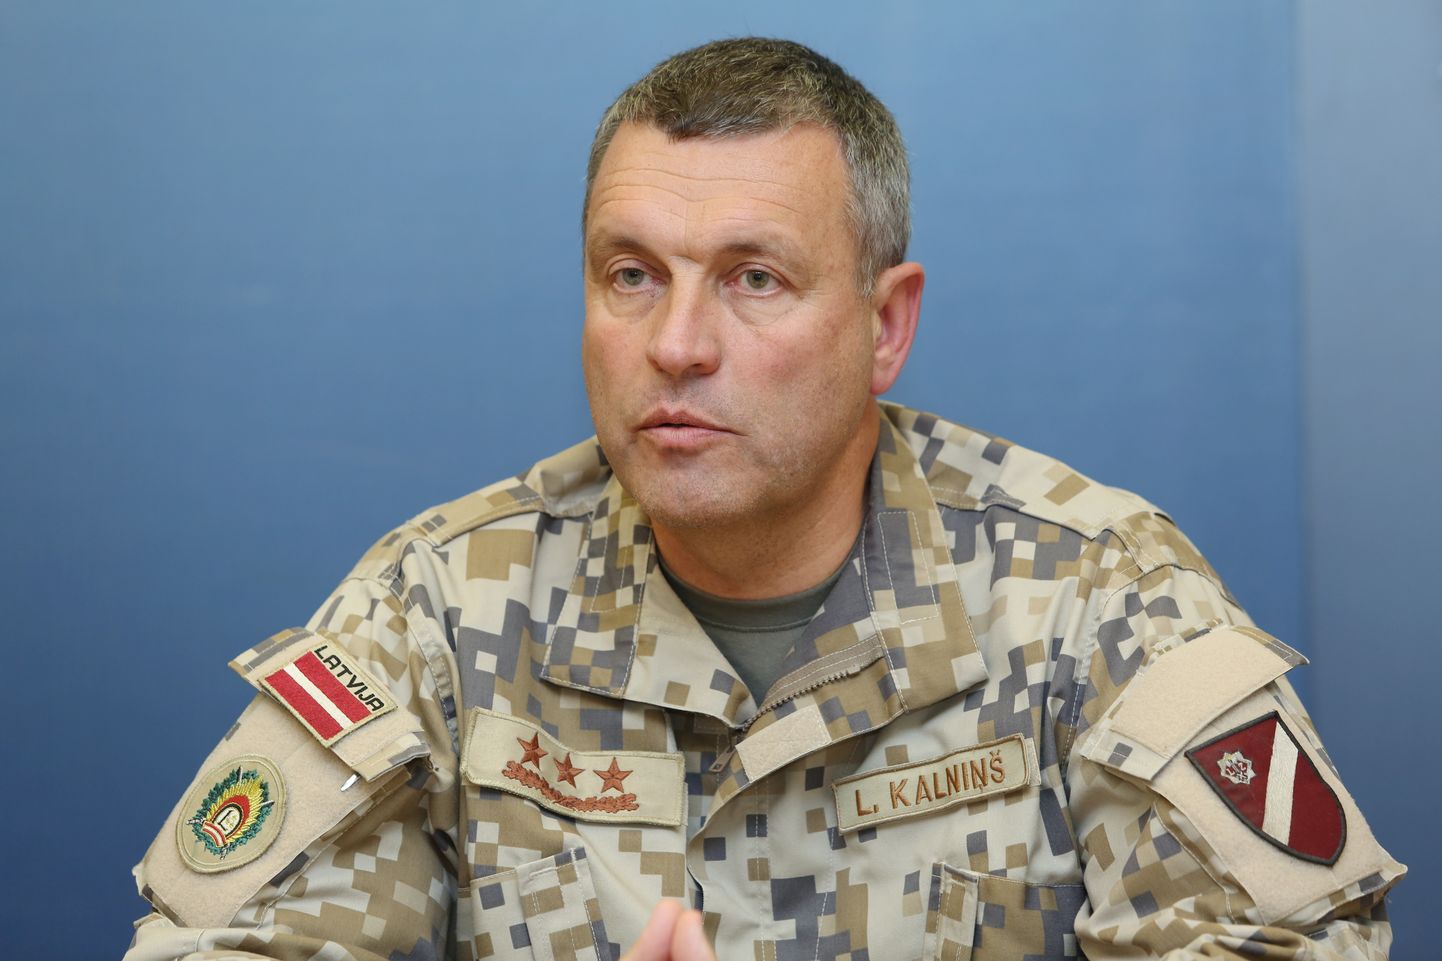 Nacionālo bruņoto spēku komandieris ģenerālleitnants Leonīds Kalniņš